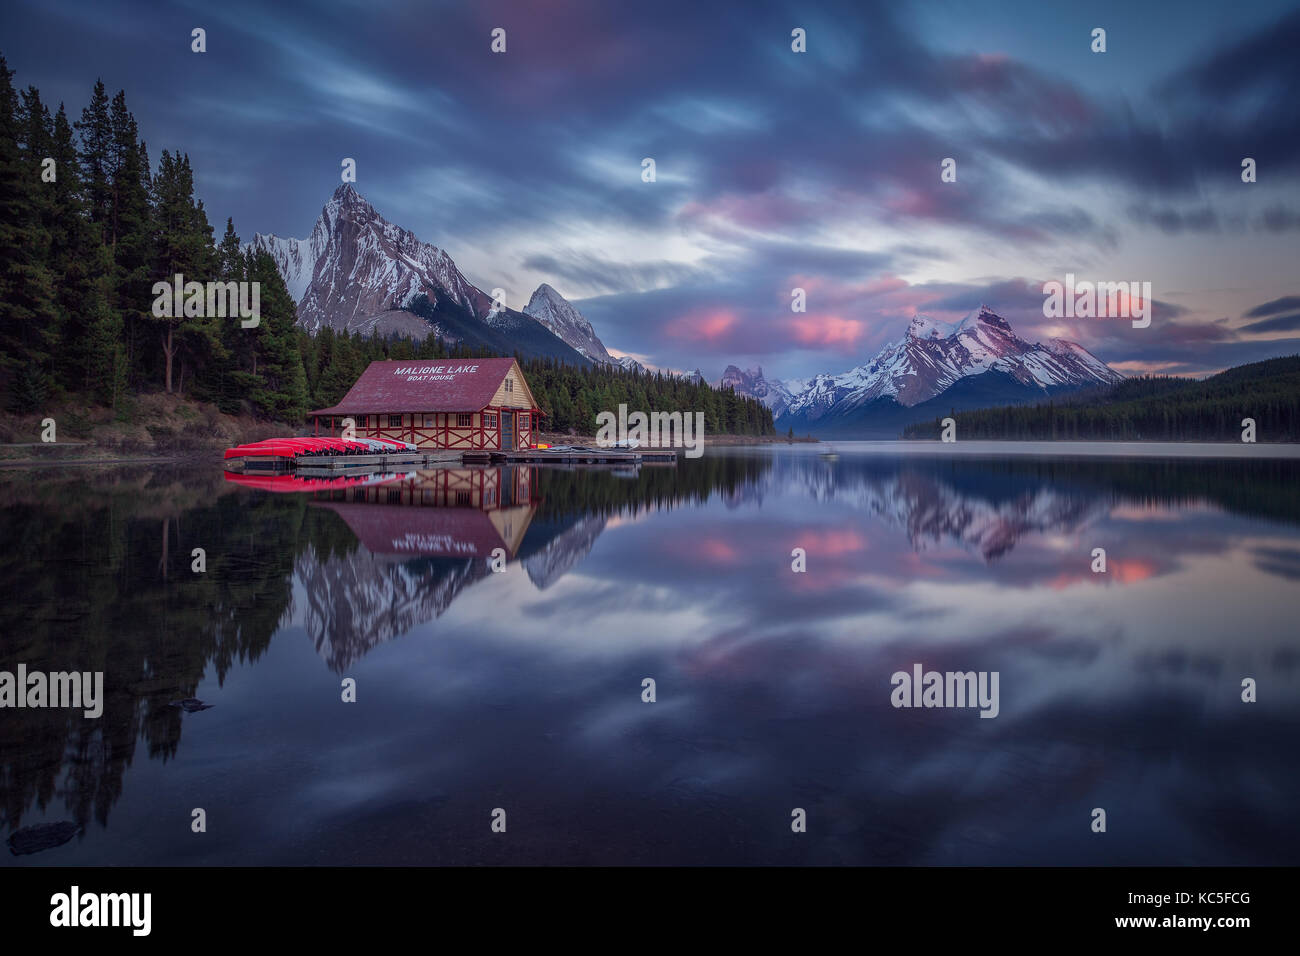 Haus und Boote in Maligne Lake, nach Sonnenuntergang. Feder an der Kanadischen Rockies. Kanada Landschaft. Spiegelbild. Stockfoto